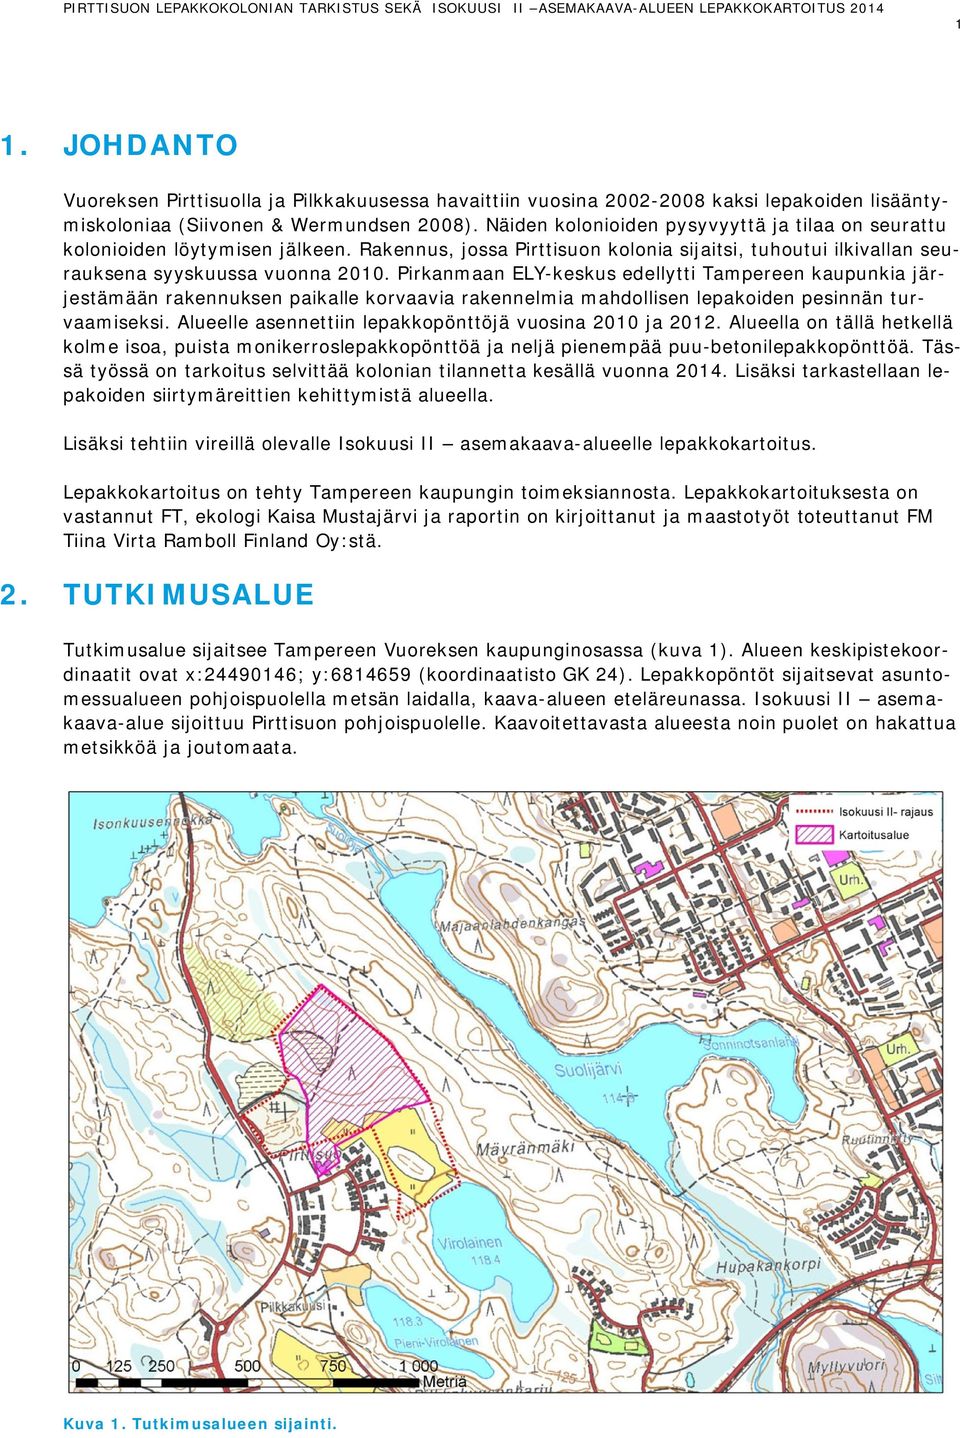 Pirkanmaan ELY-keskus edellytti Tampereen kaupunkia järjestämään rakennuksen paikalle korvaavia rakennelmia mahdollisen lepakoiden pesinnän turvaamiseksi.